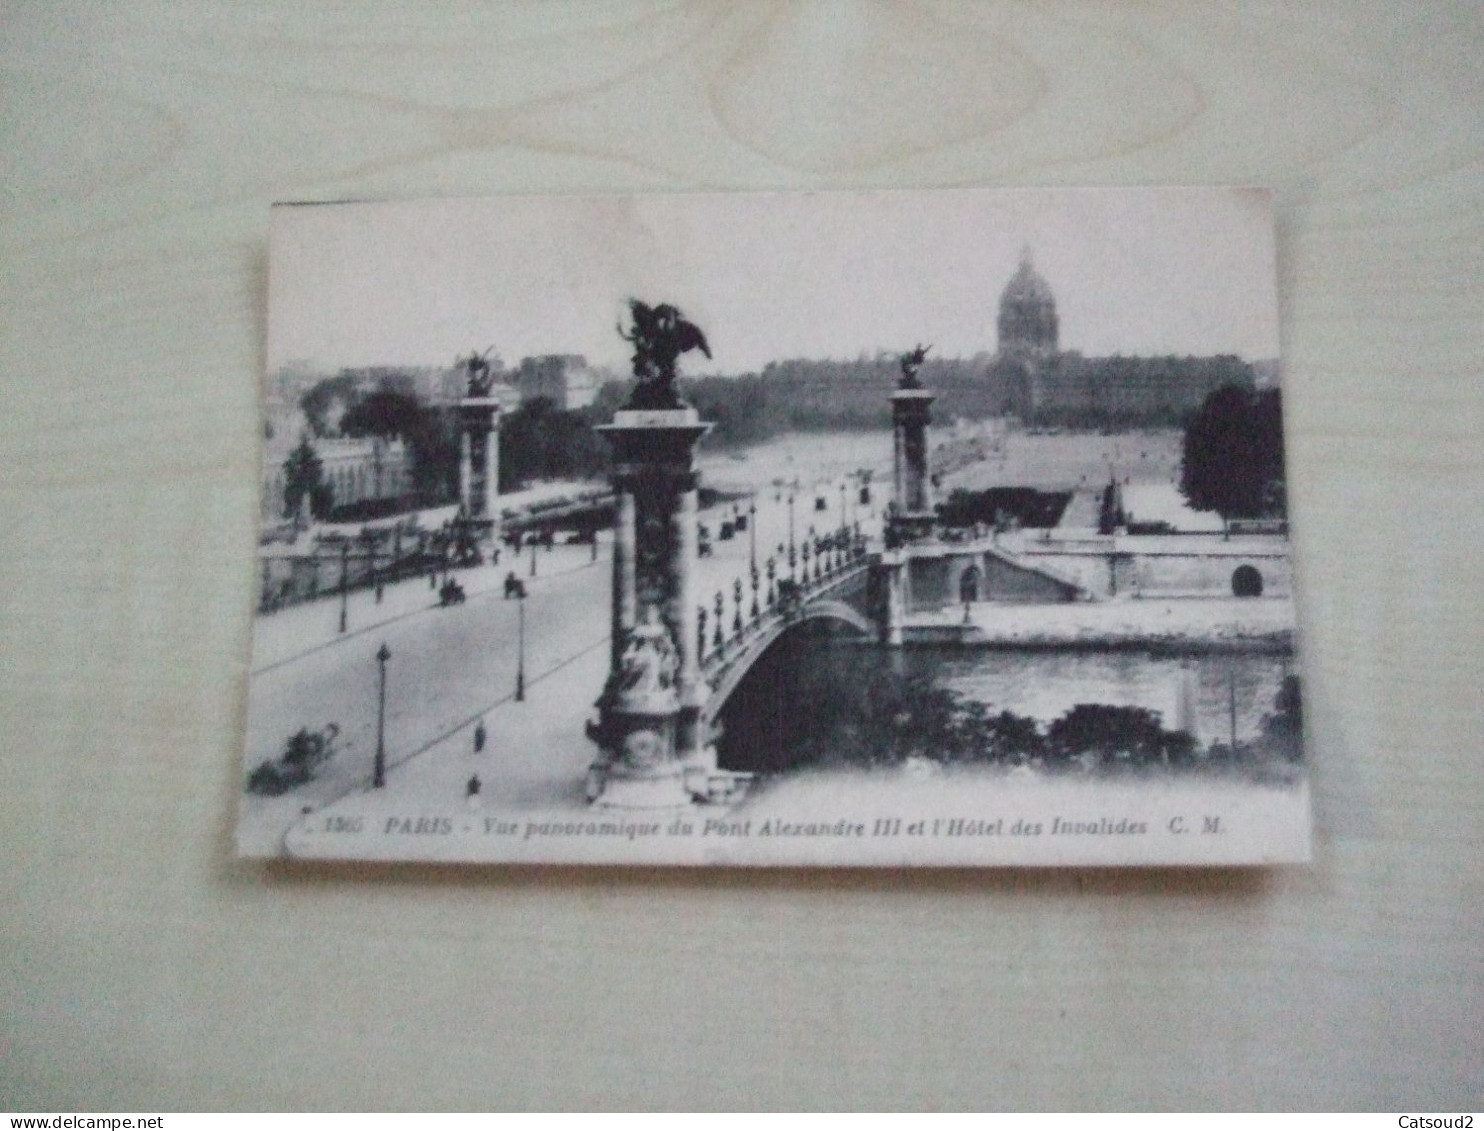 Carte Postale Ancienne PARIS Vue Panoramique Du Pont Alexandre III Et L'hôtel Des Invalides - De Seine En Haar Oevers